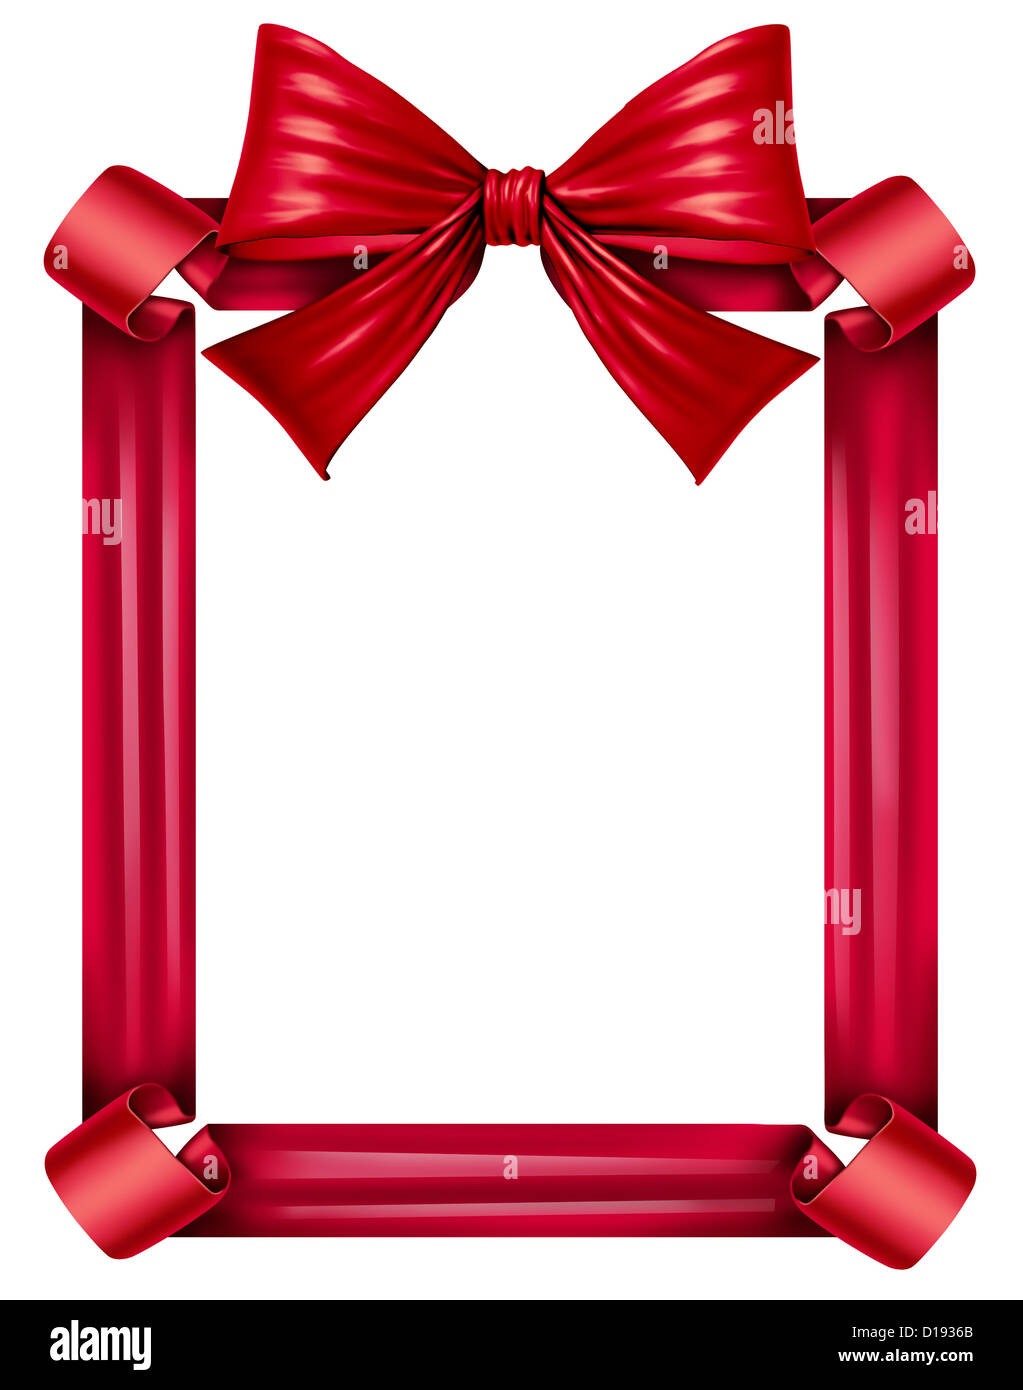 Rotes Seidenband und Bogen als Rahmen für eine saisonale Dekoration für Geschenk geben ein fest wie Weihnachten, Geburtstage und Jubiläen oder Valentinstag isoliert auf einem weißen Hintergrund. Stockfoto